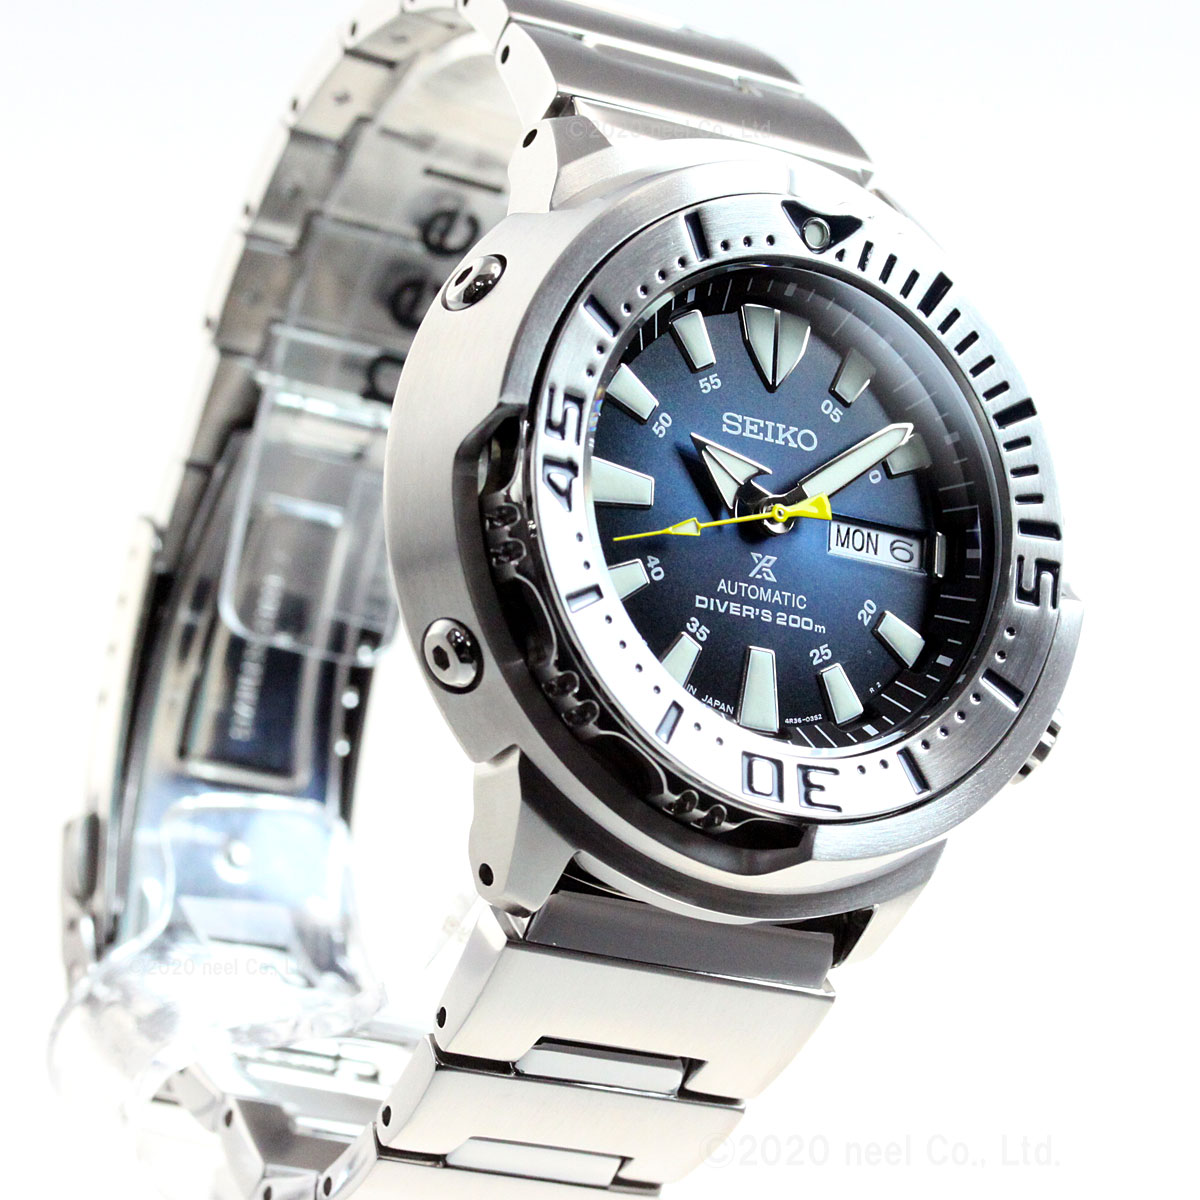 セイコー プロスペックス SEIKO 腕時計 ダイバースキューバ Tuna 自動巻き メンズ ベビーツナ PROSPEX ネット流通限定モデル